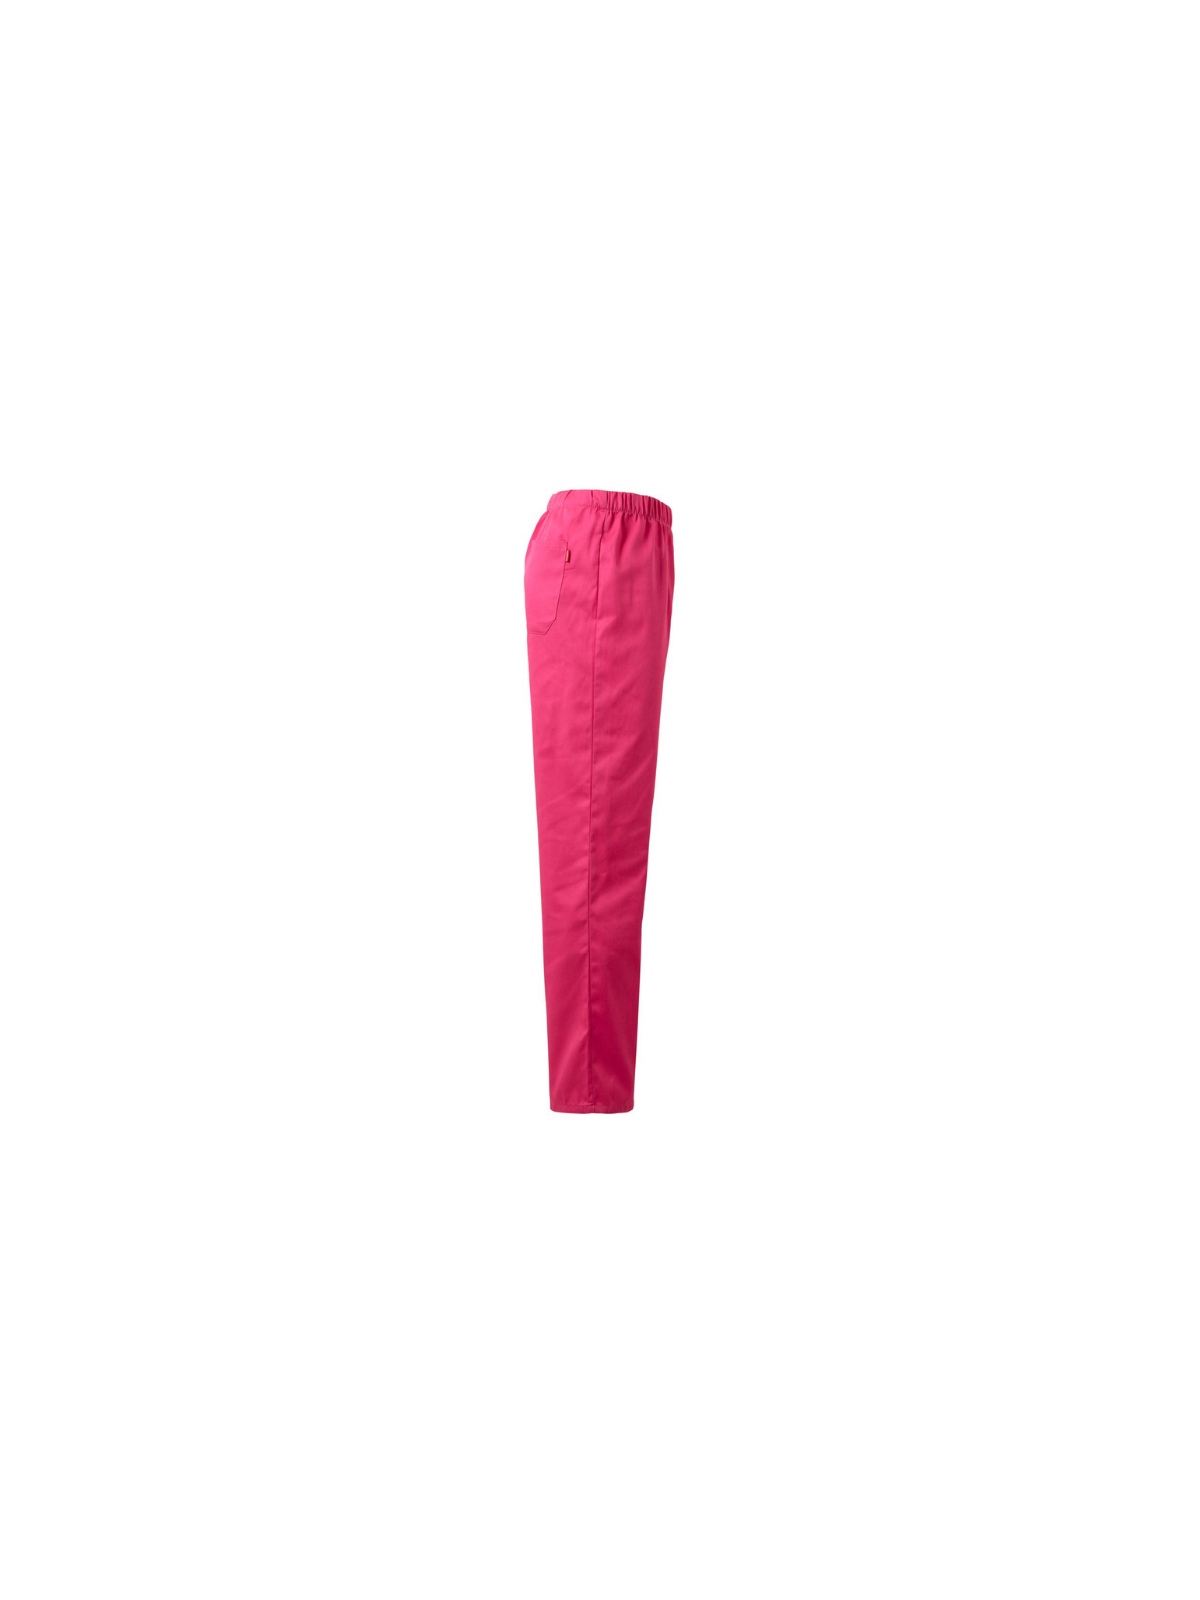 Pantalón uniforme Velilla
rosa